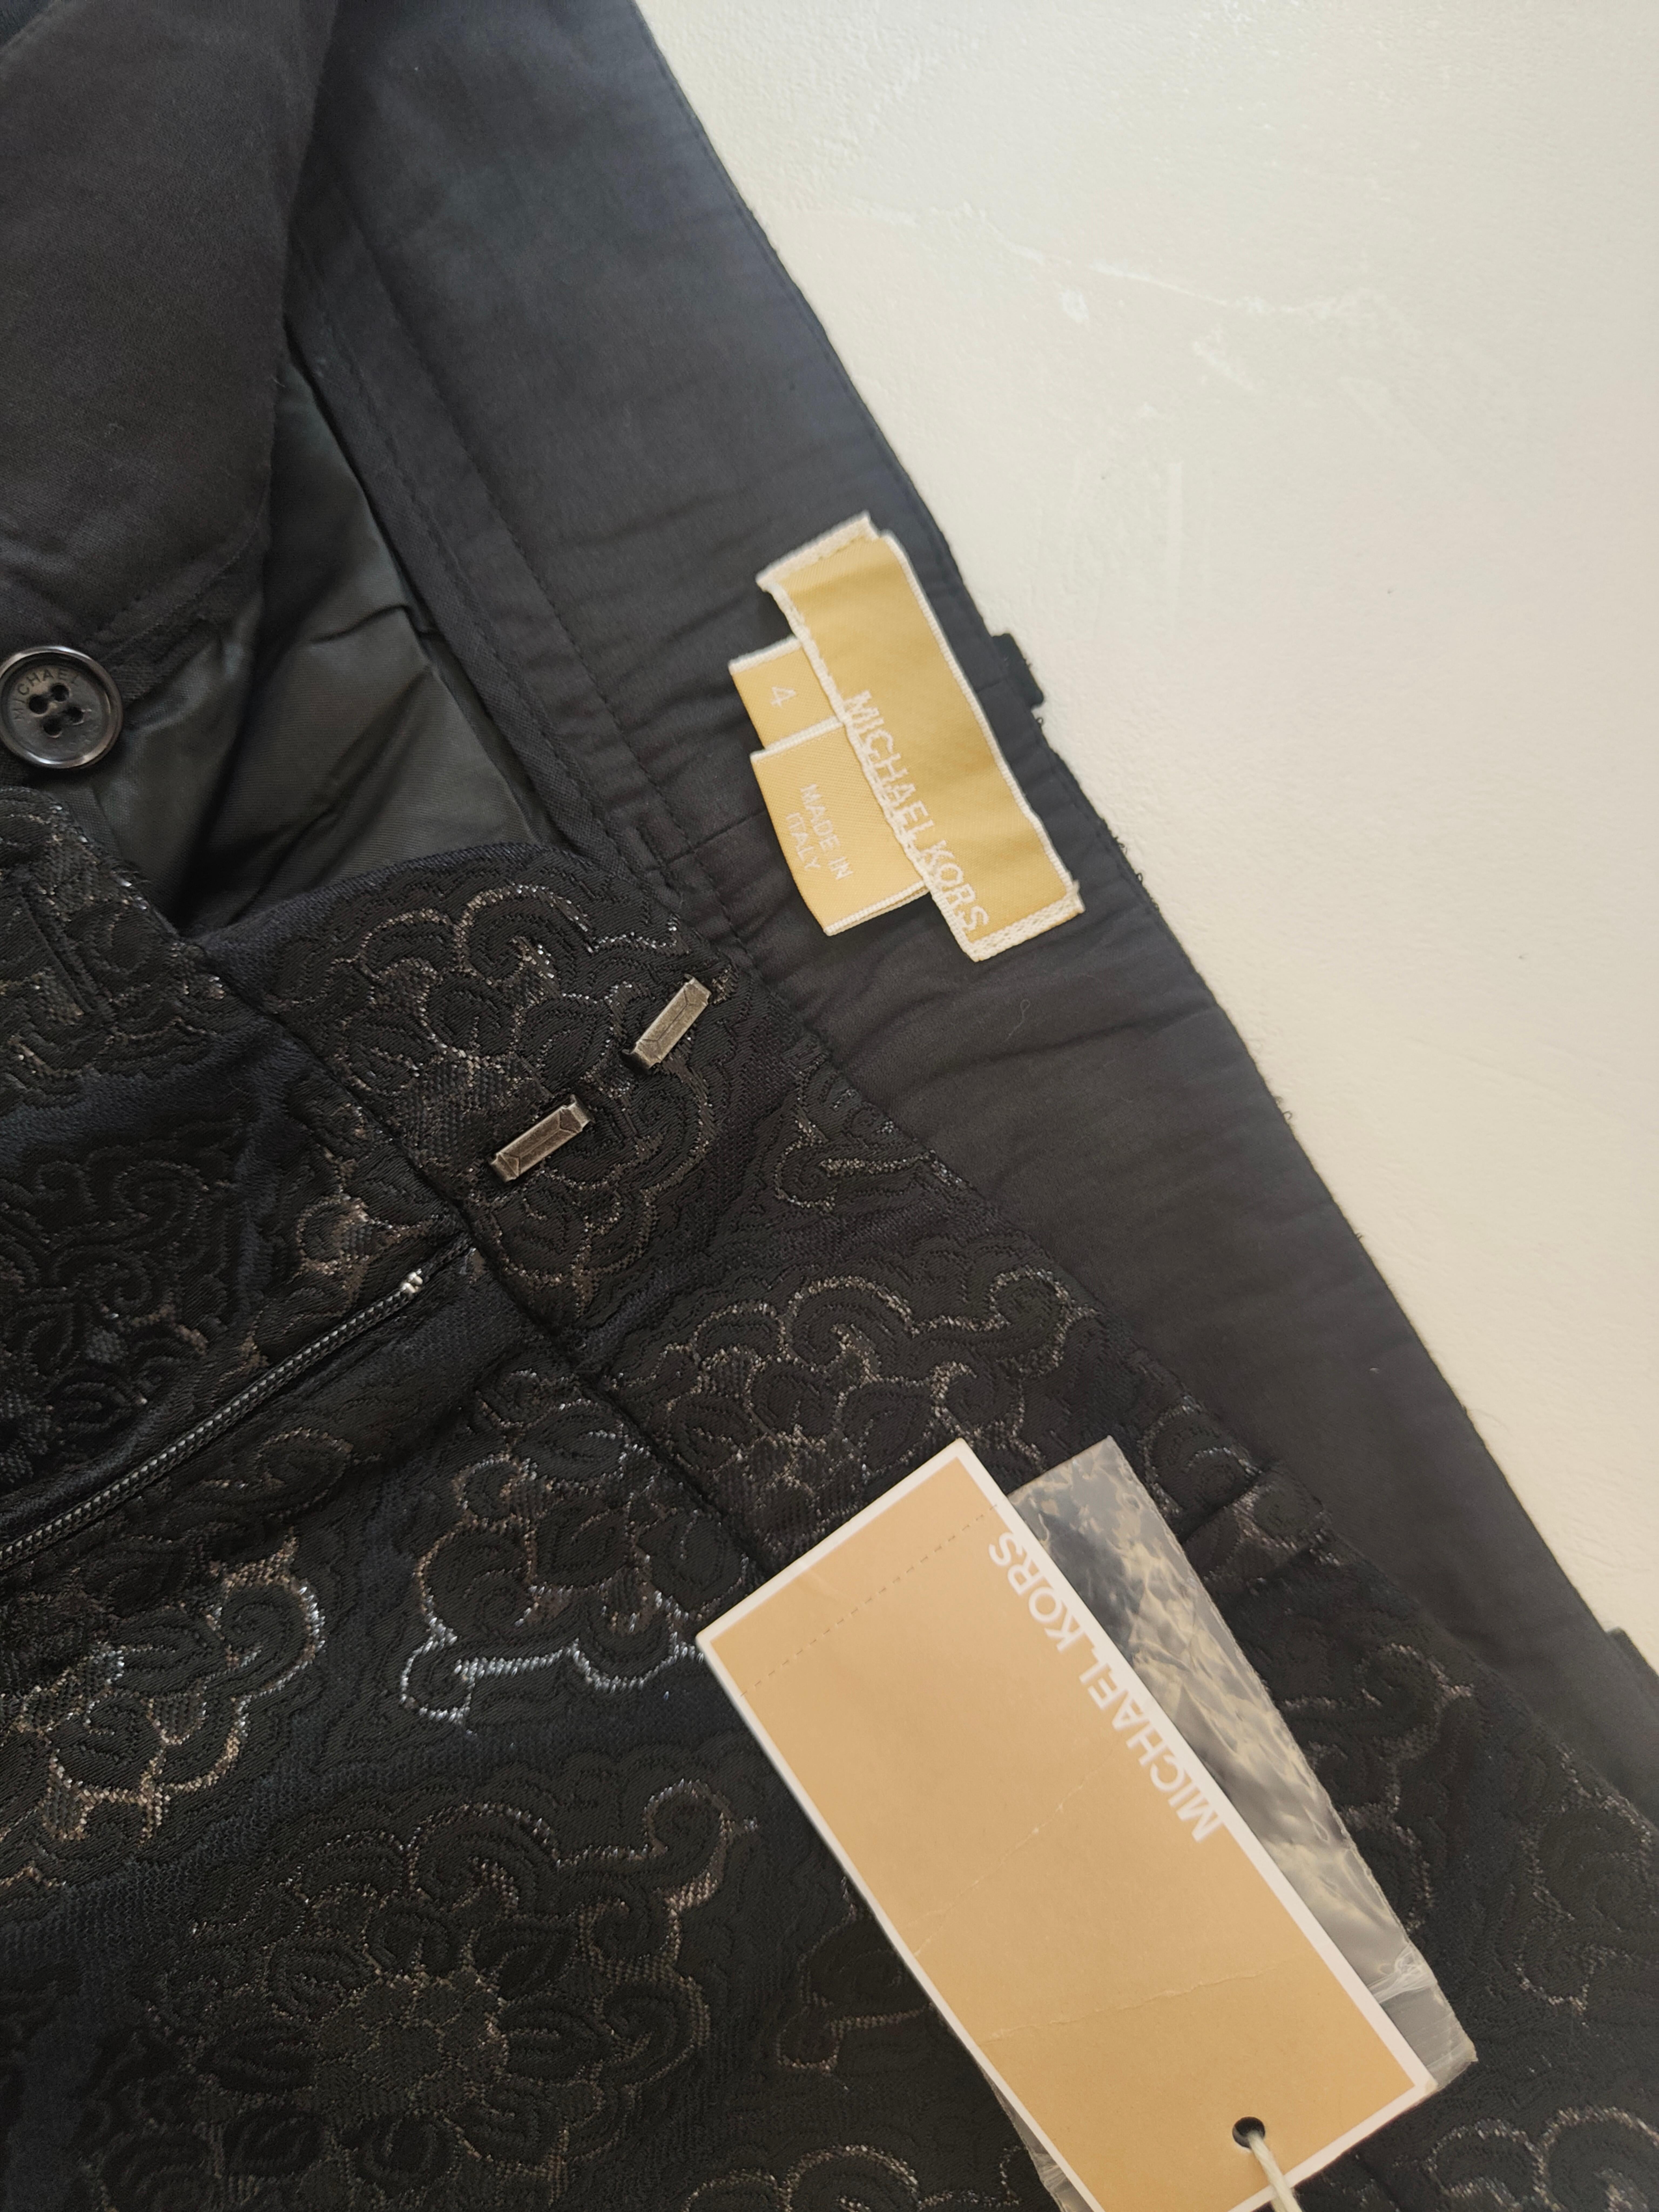 Michael Kors black pants NWOT
Size 4
Waist 74 cm, lenght 65 cm